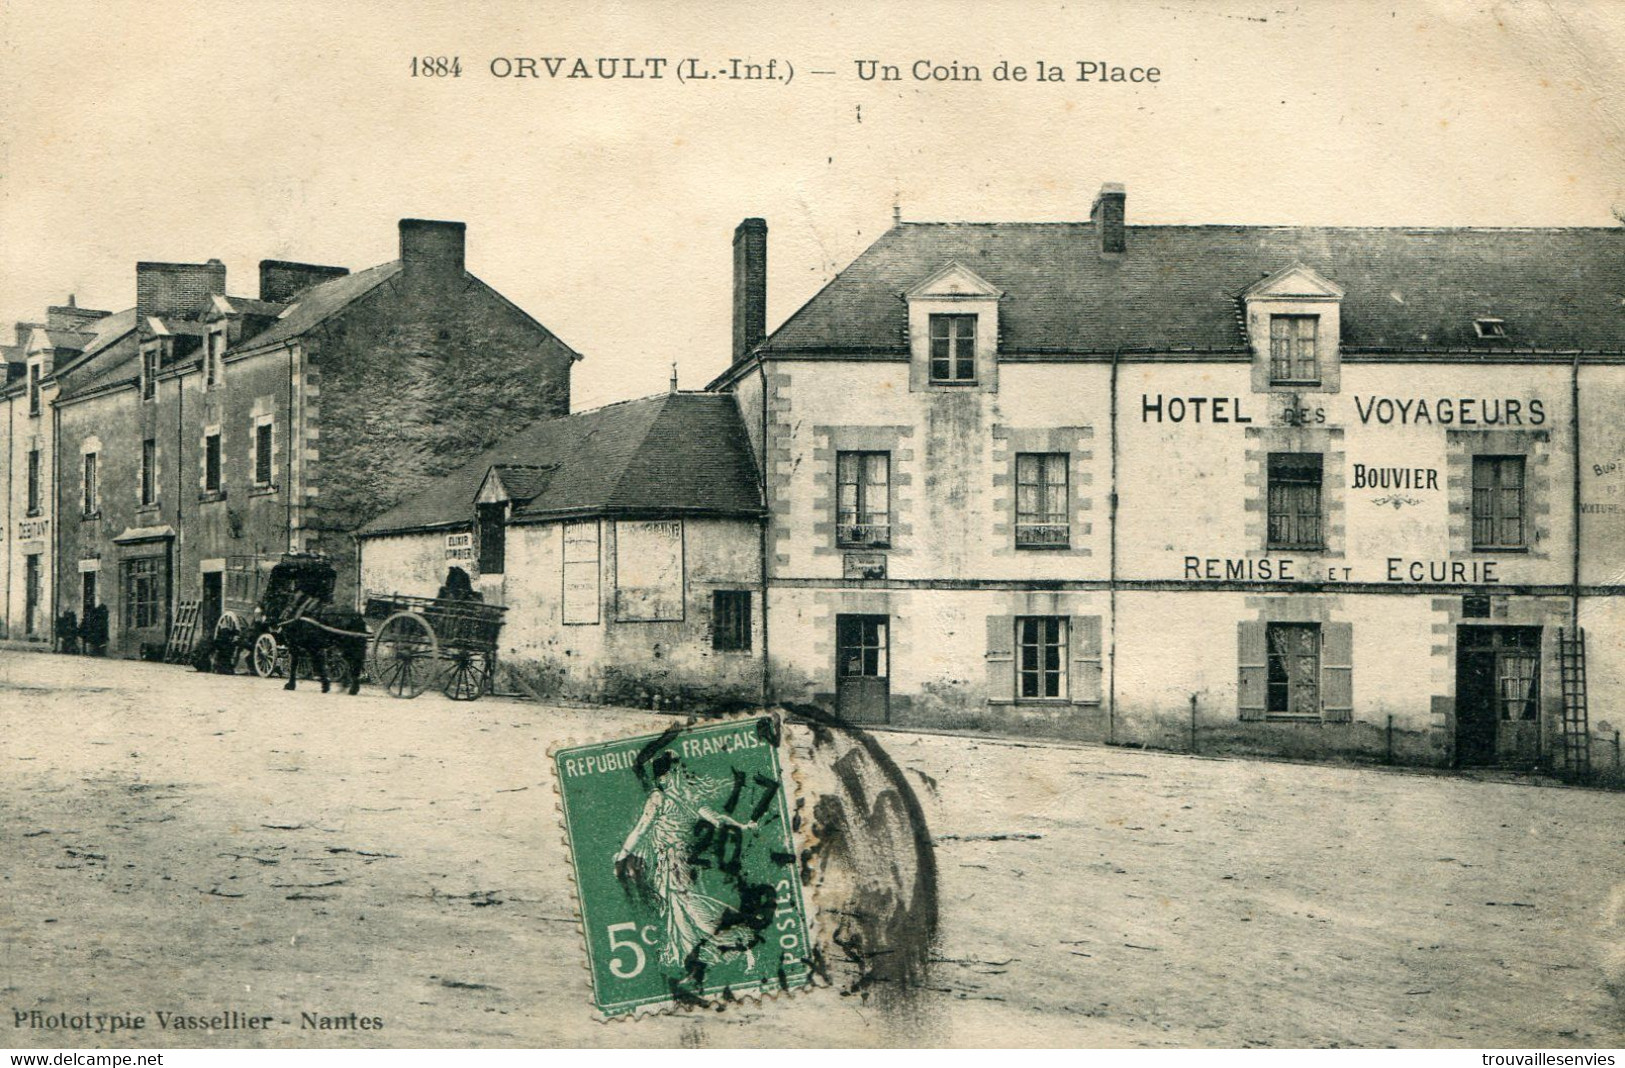 1884. ORVAULT - UN COIN DE LA PLACE - Orvault